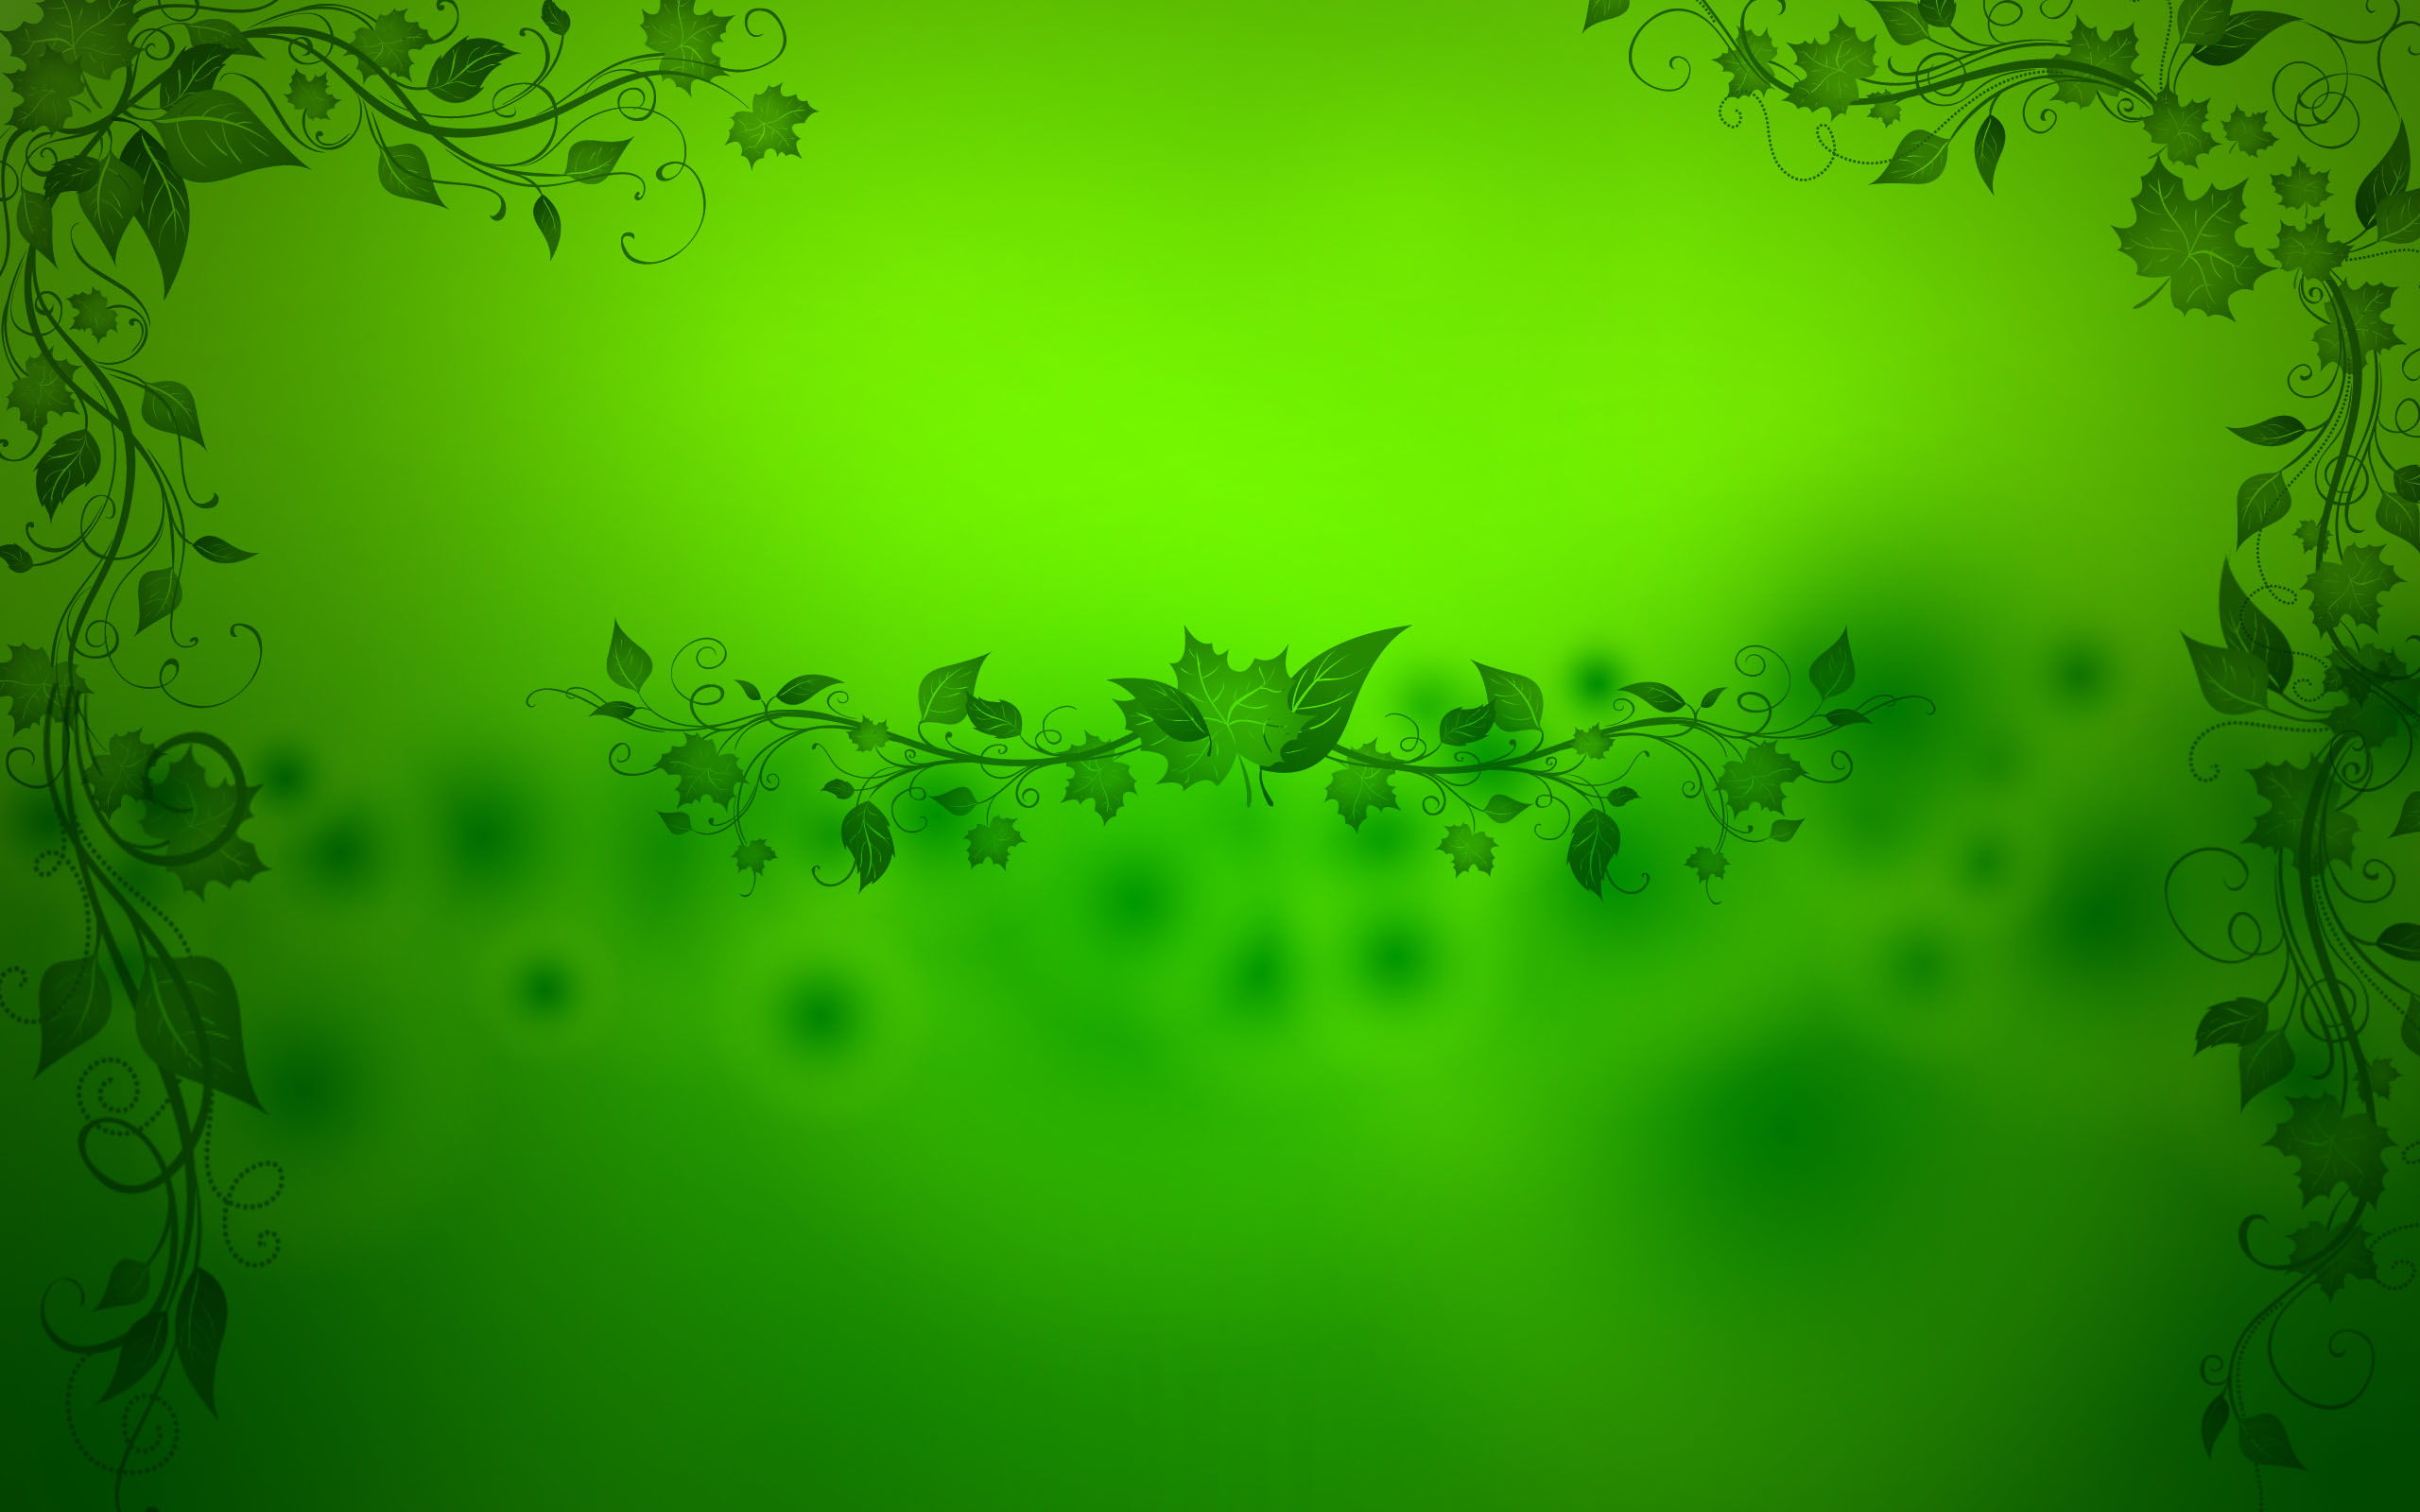 Mẹo tạo hiệu ứng hình nền xanh lá cây cho không gian sống của bạn